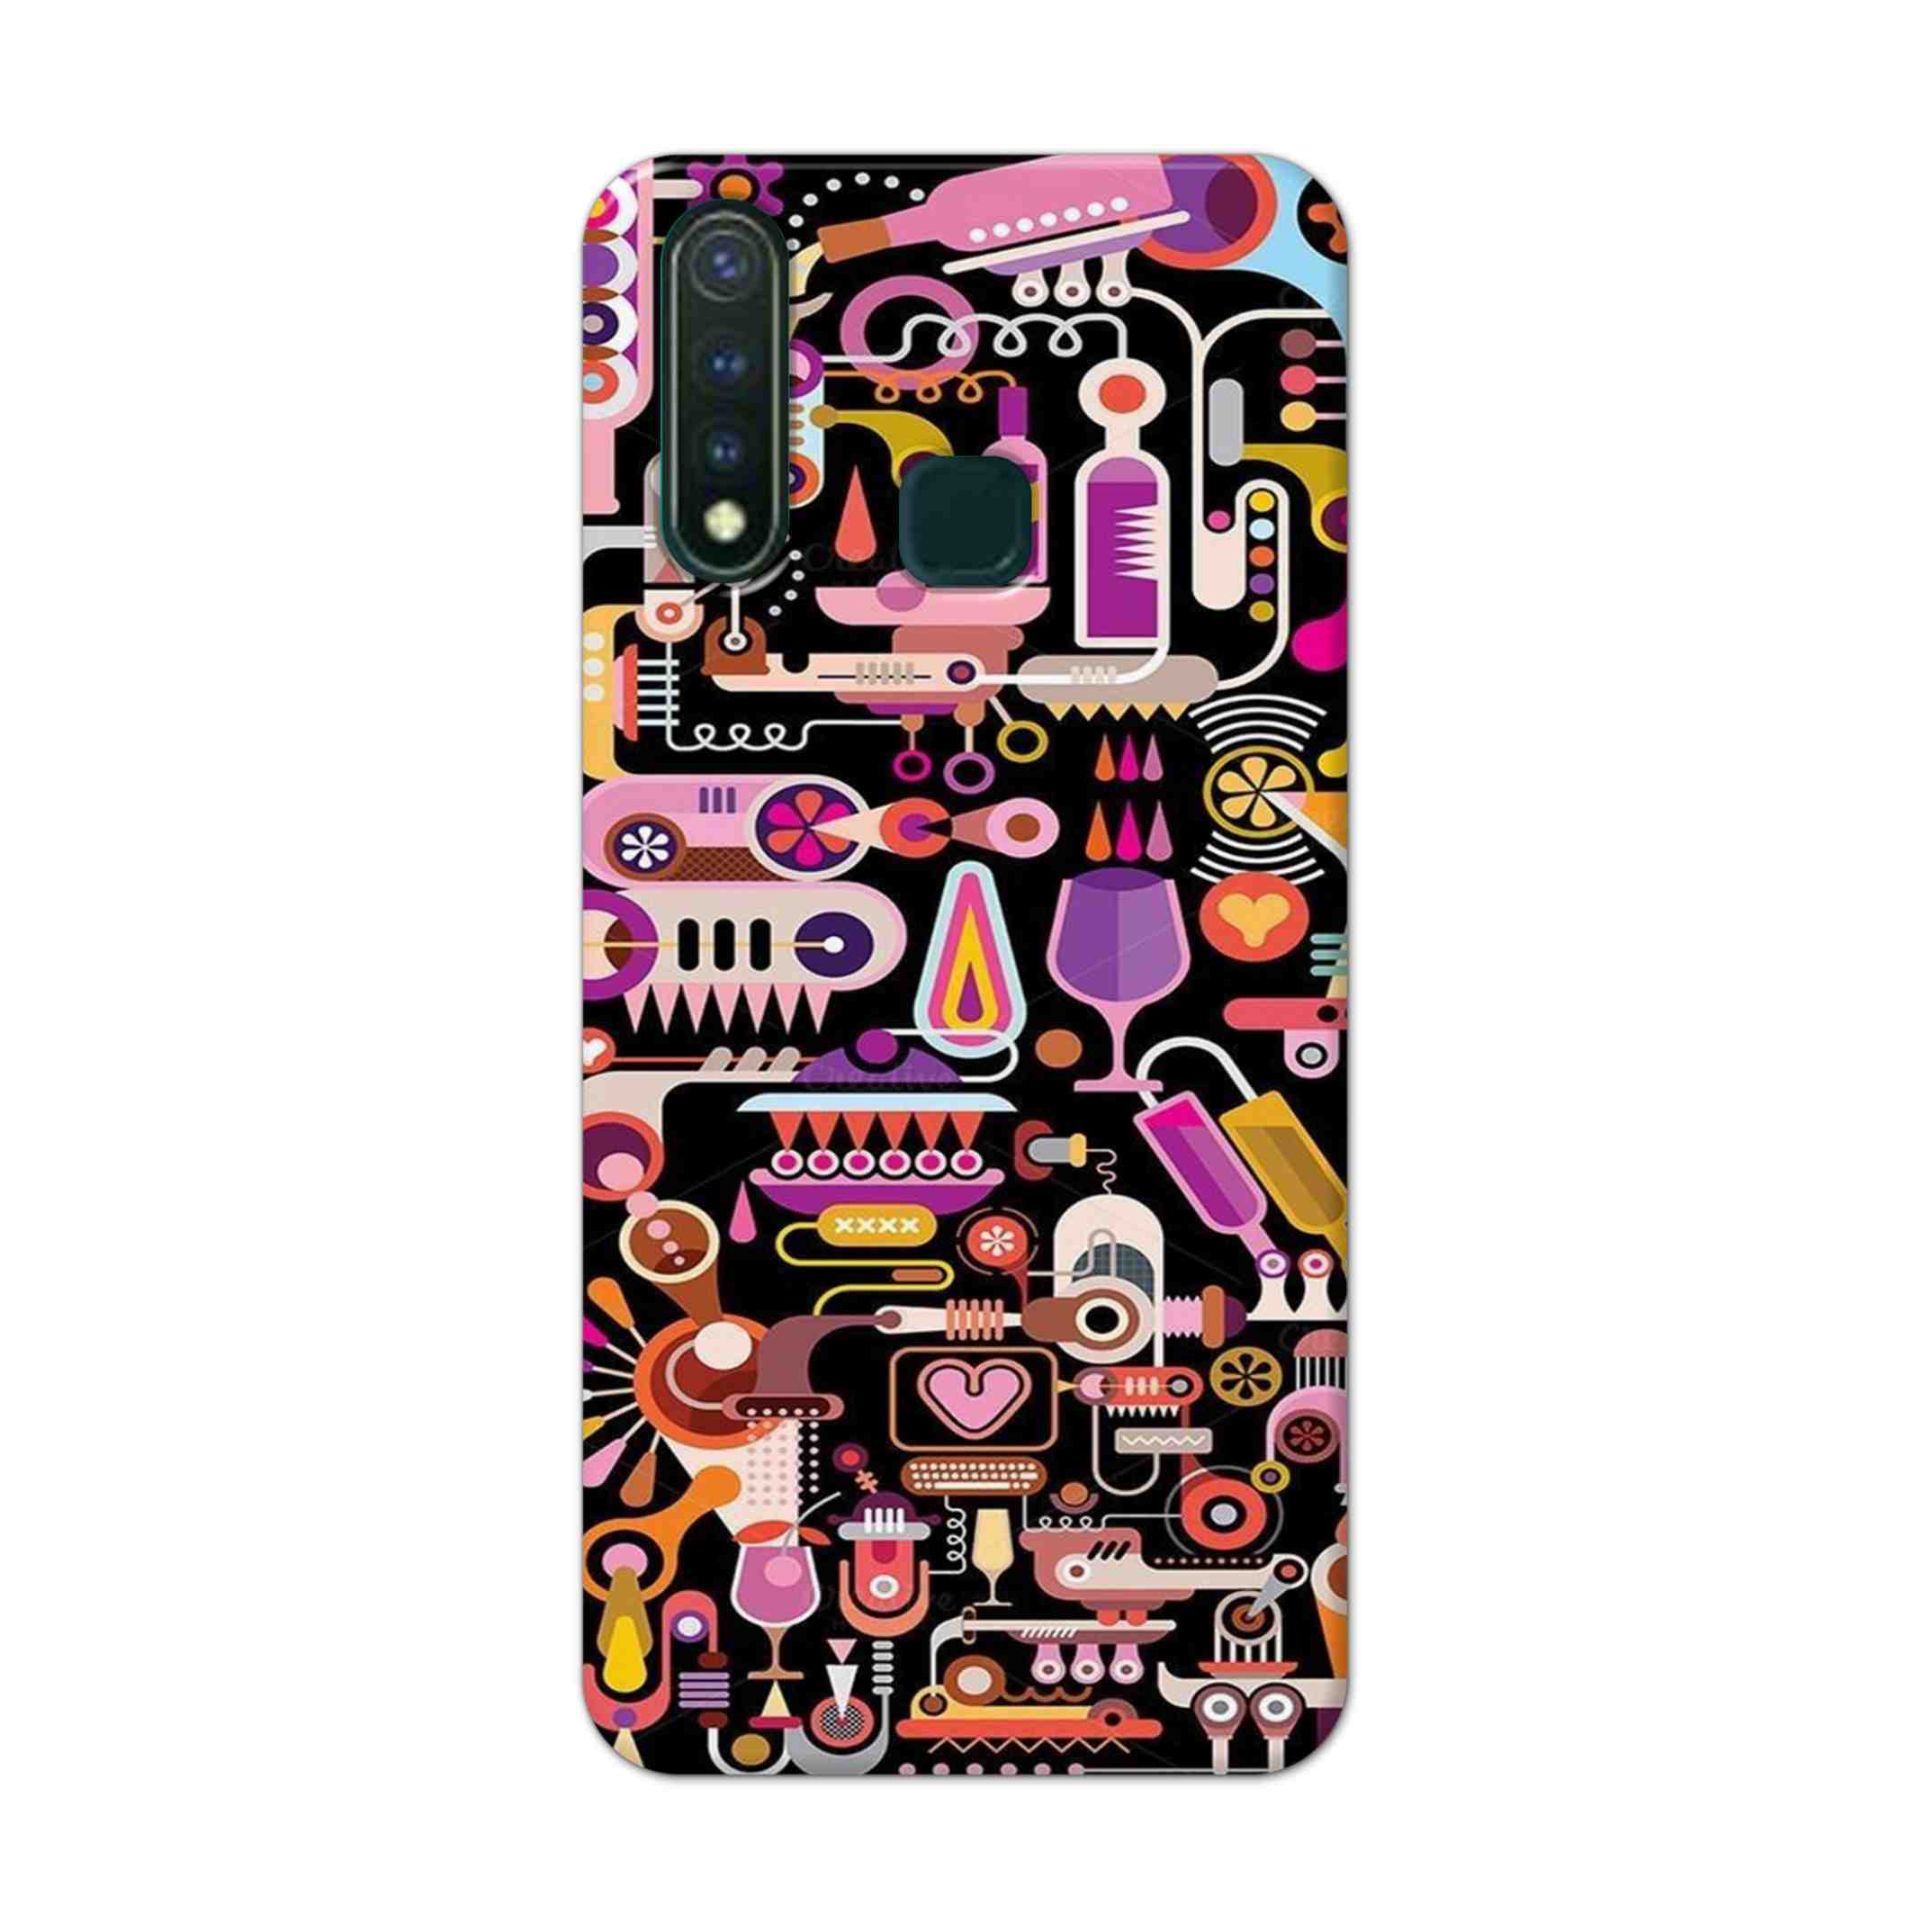 Buy Lab Art Hard Back Mobile Phone Case Cover For Vivo Y19 Online